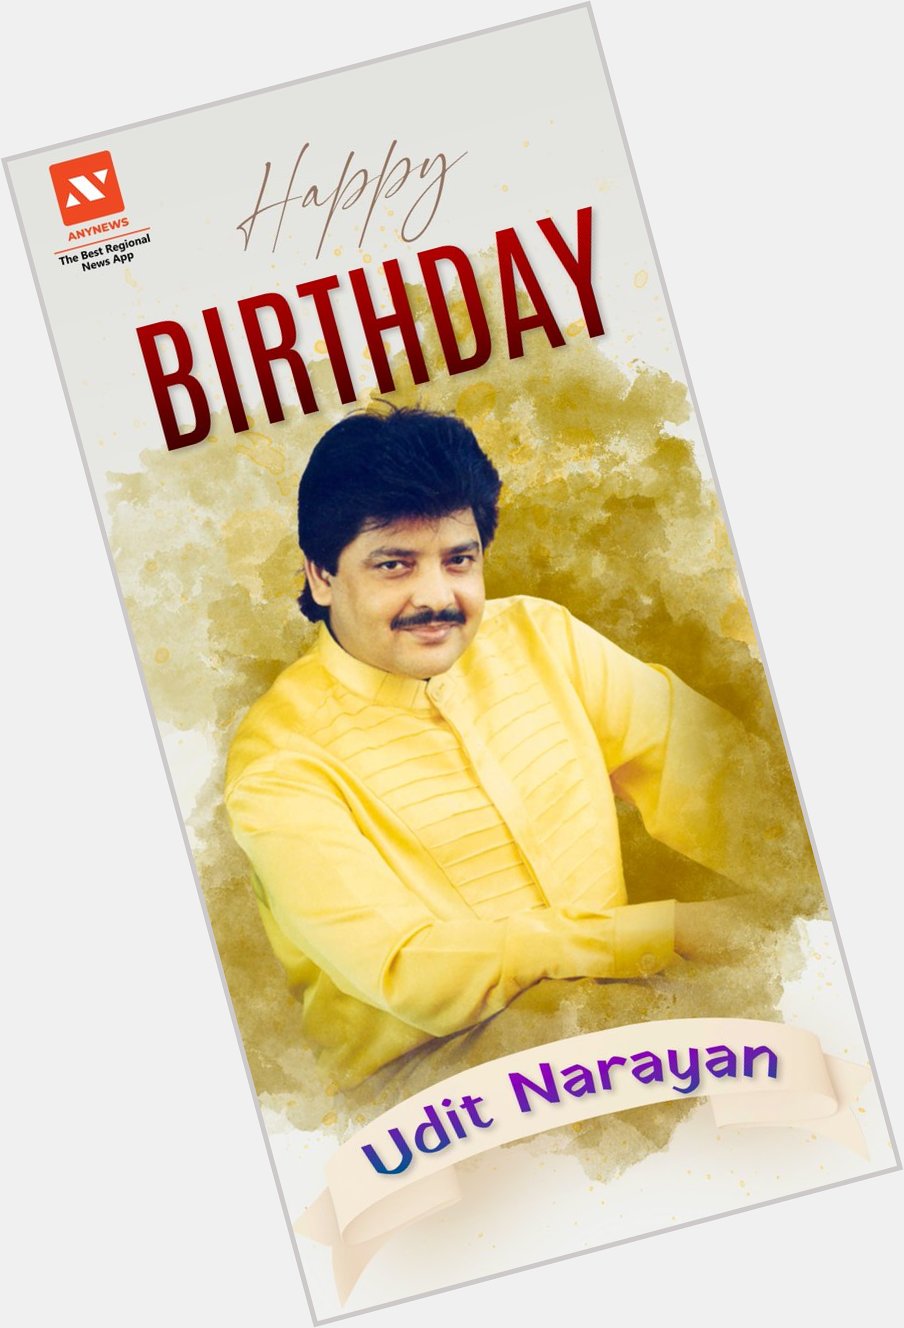 AnyNews wishes Udit Narayan Happy Birthday.    